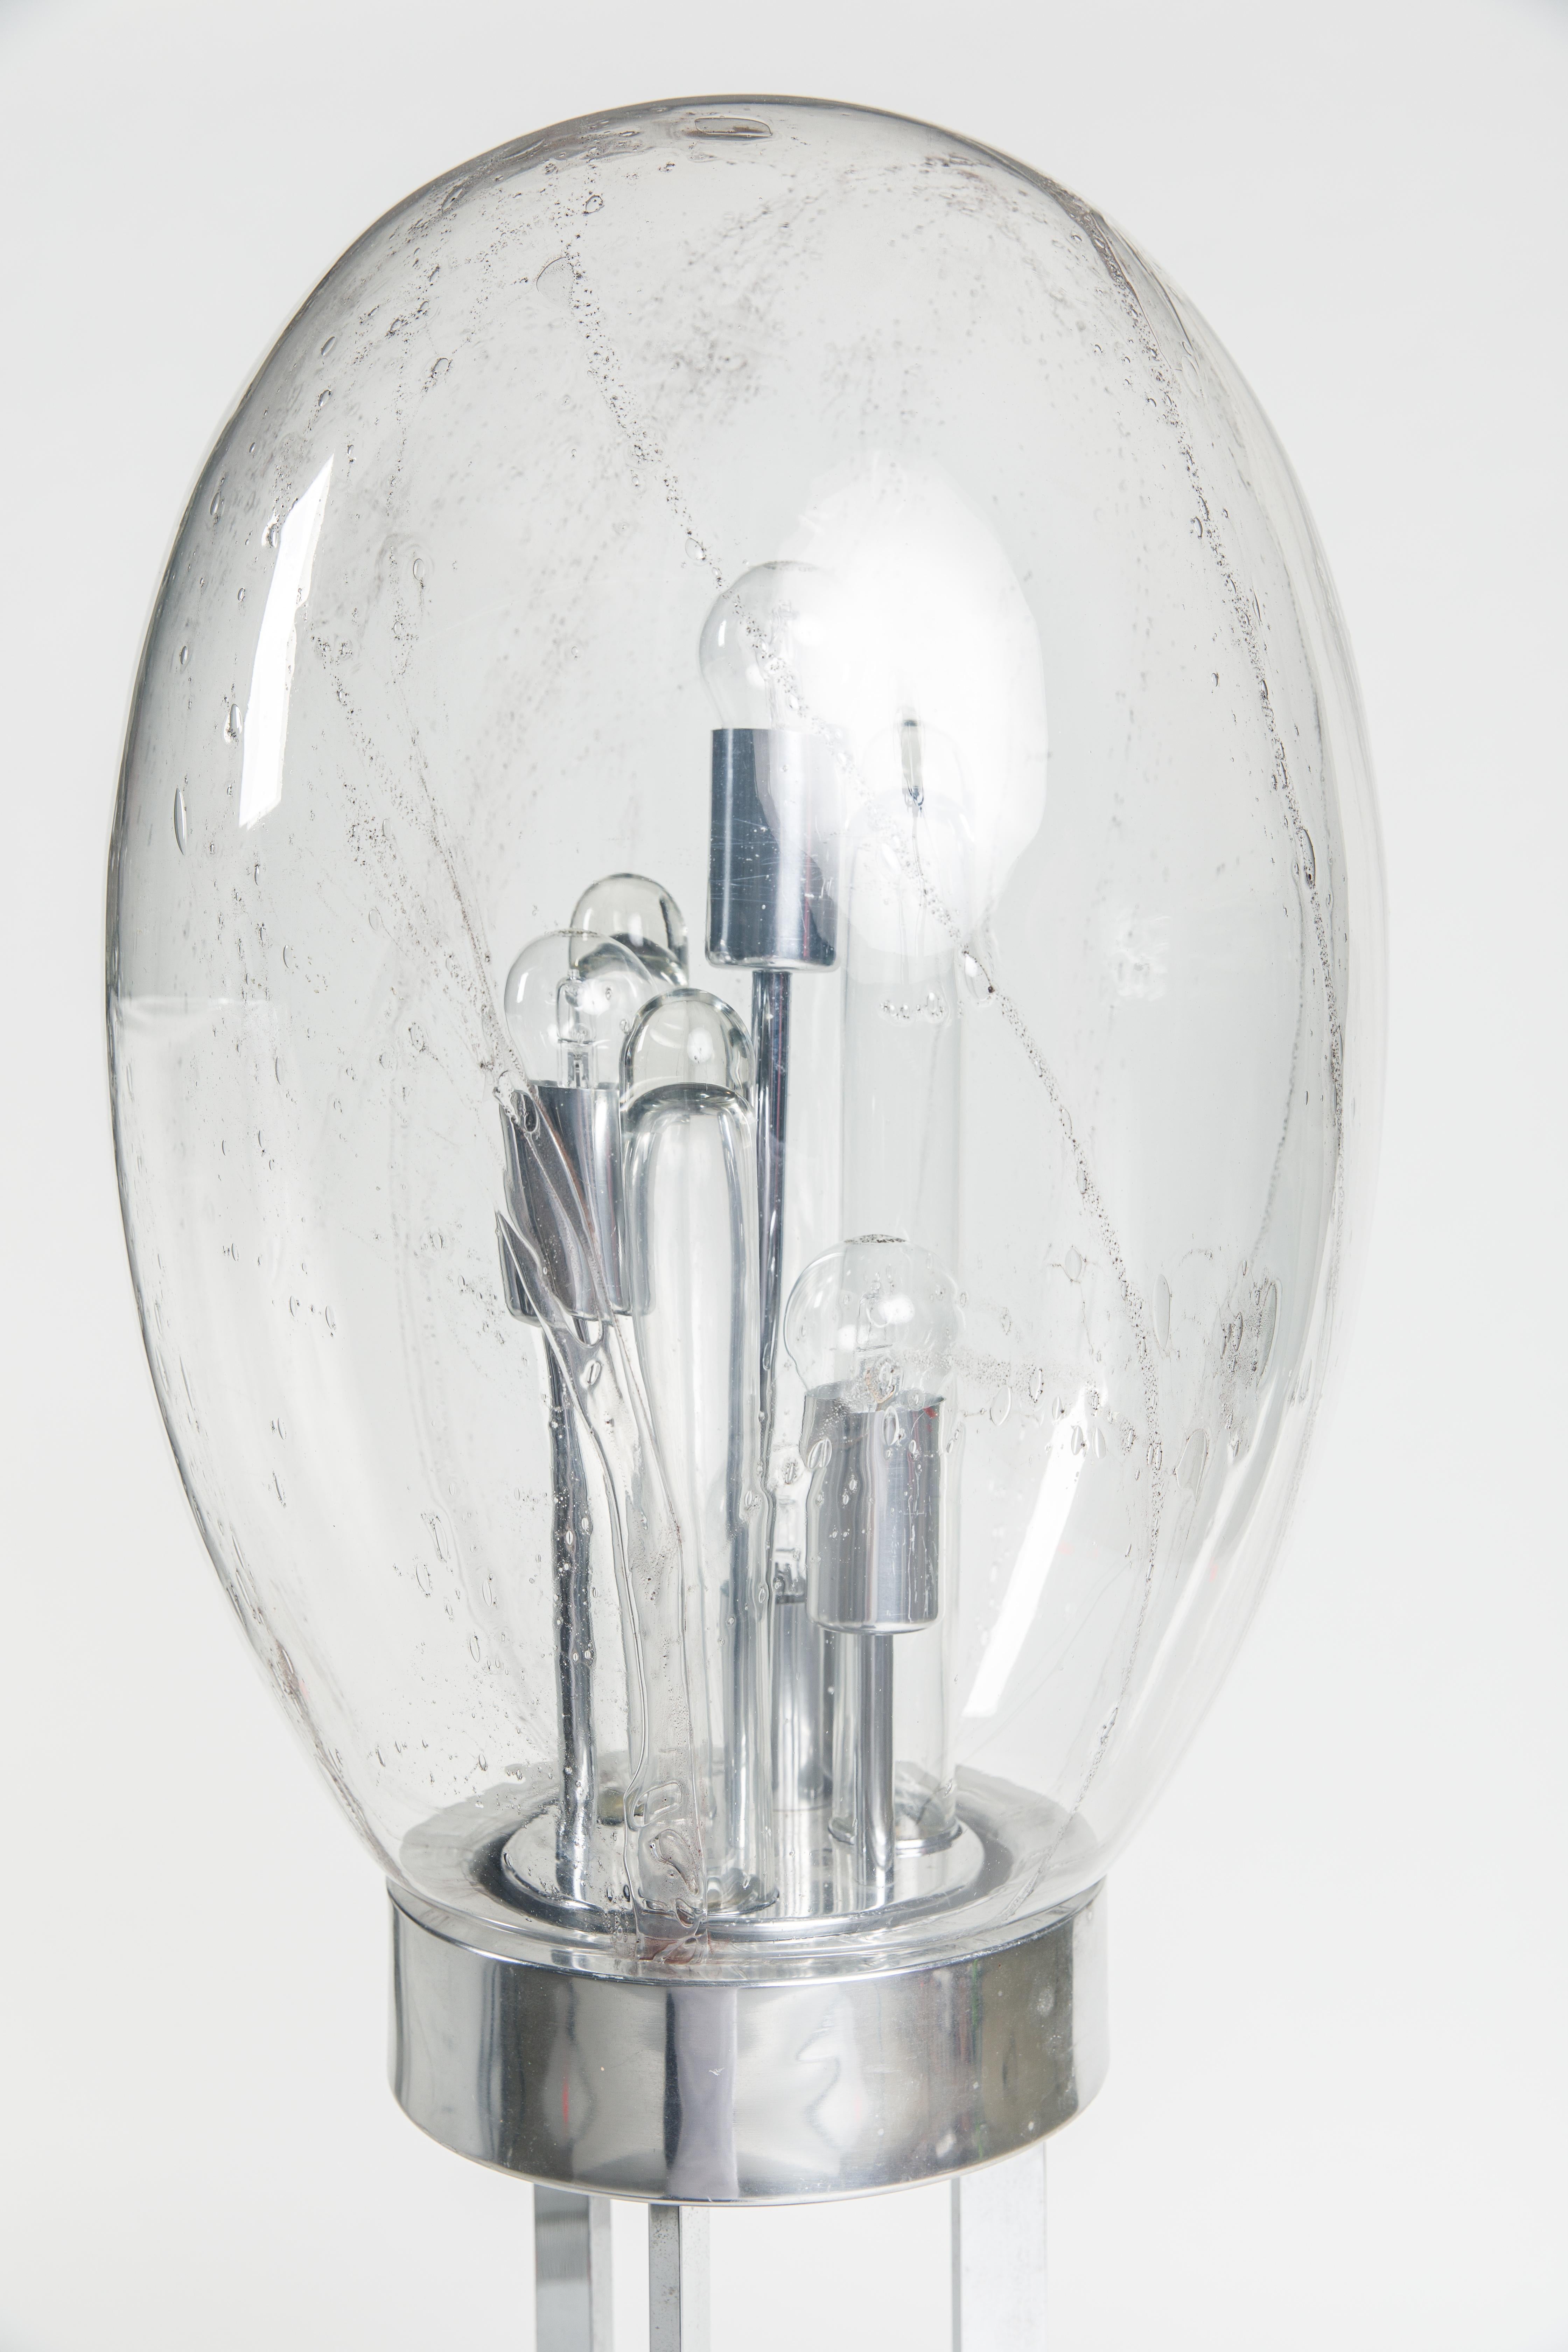 Lampadaire des années 1960-1970, fabriqué par Doria en Allemagne.
Socle en métal chromé, diffuseur sphérique ovale en verre clair avec inclusions de baudruche, quatre brûleurs et trois tubes en verre à l'intérieur. Labellisé sur la face